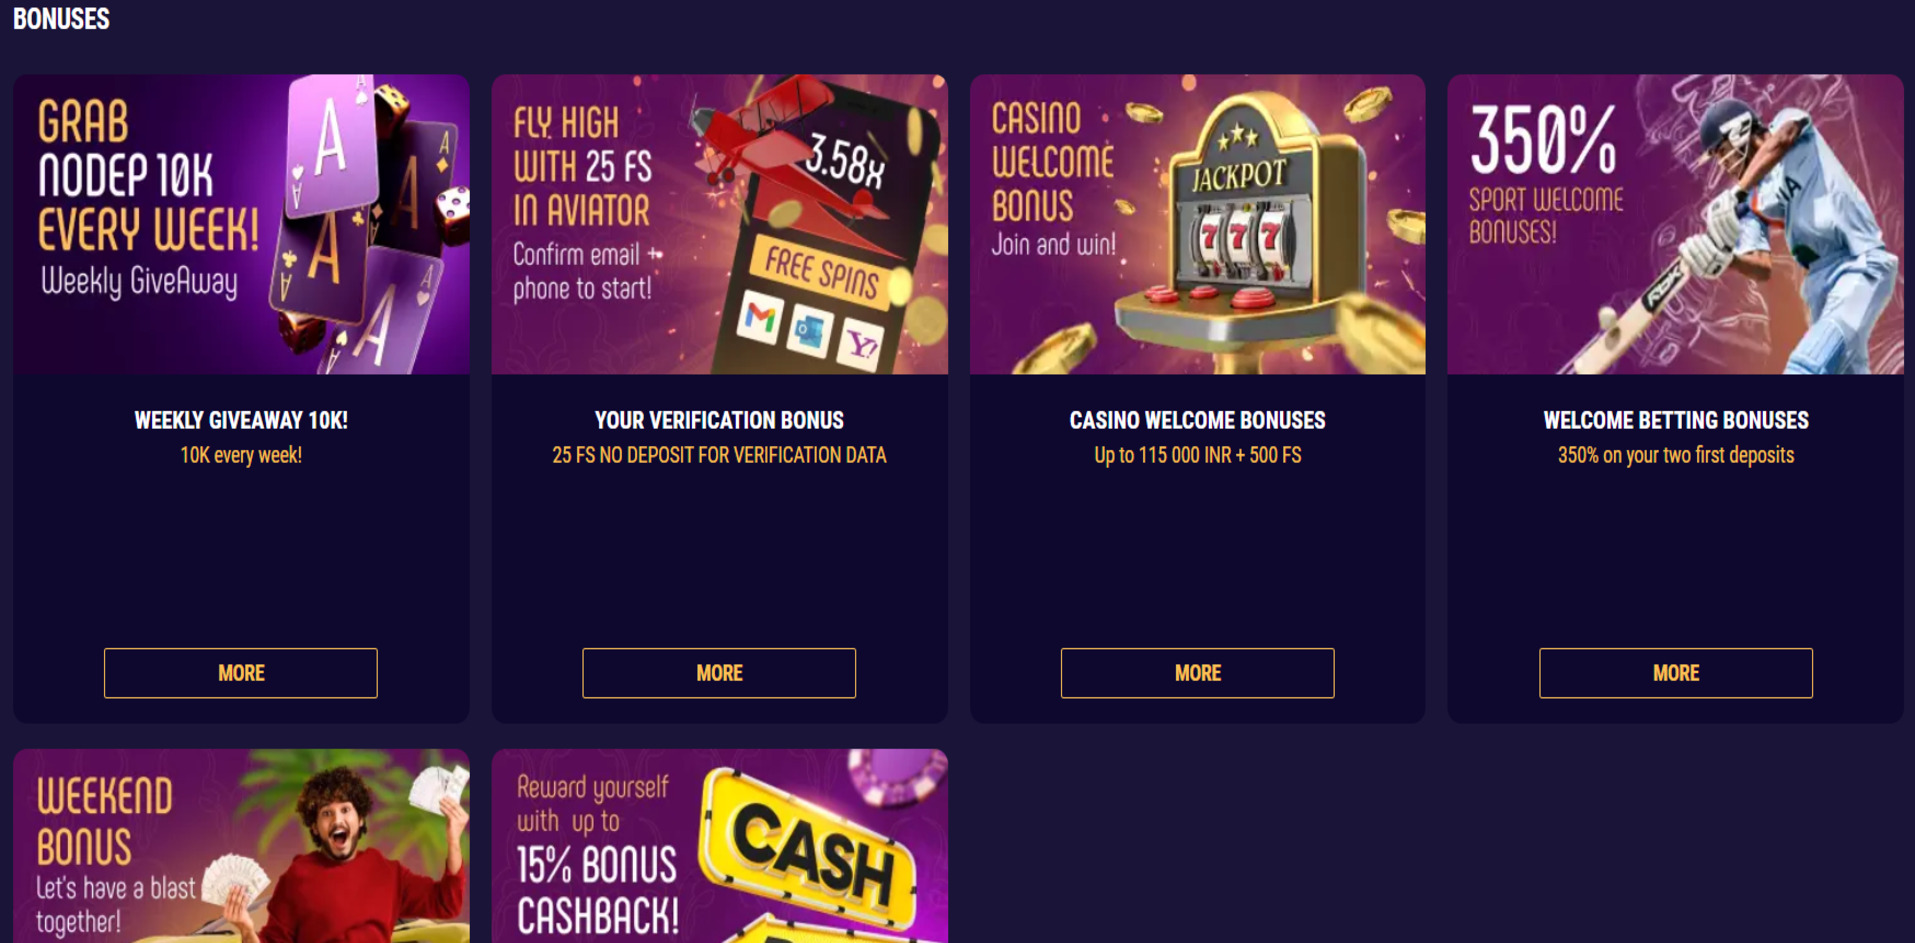 LopeBet Casino Bonuses